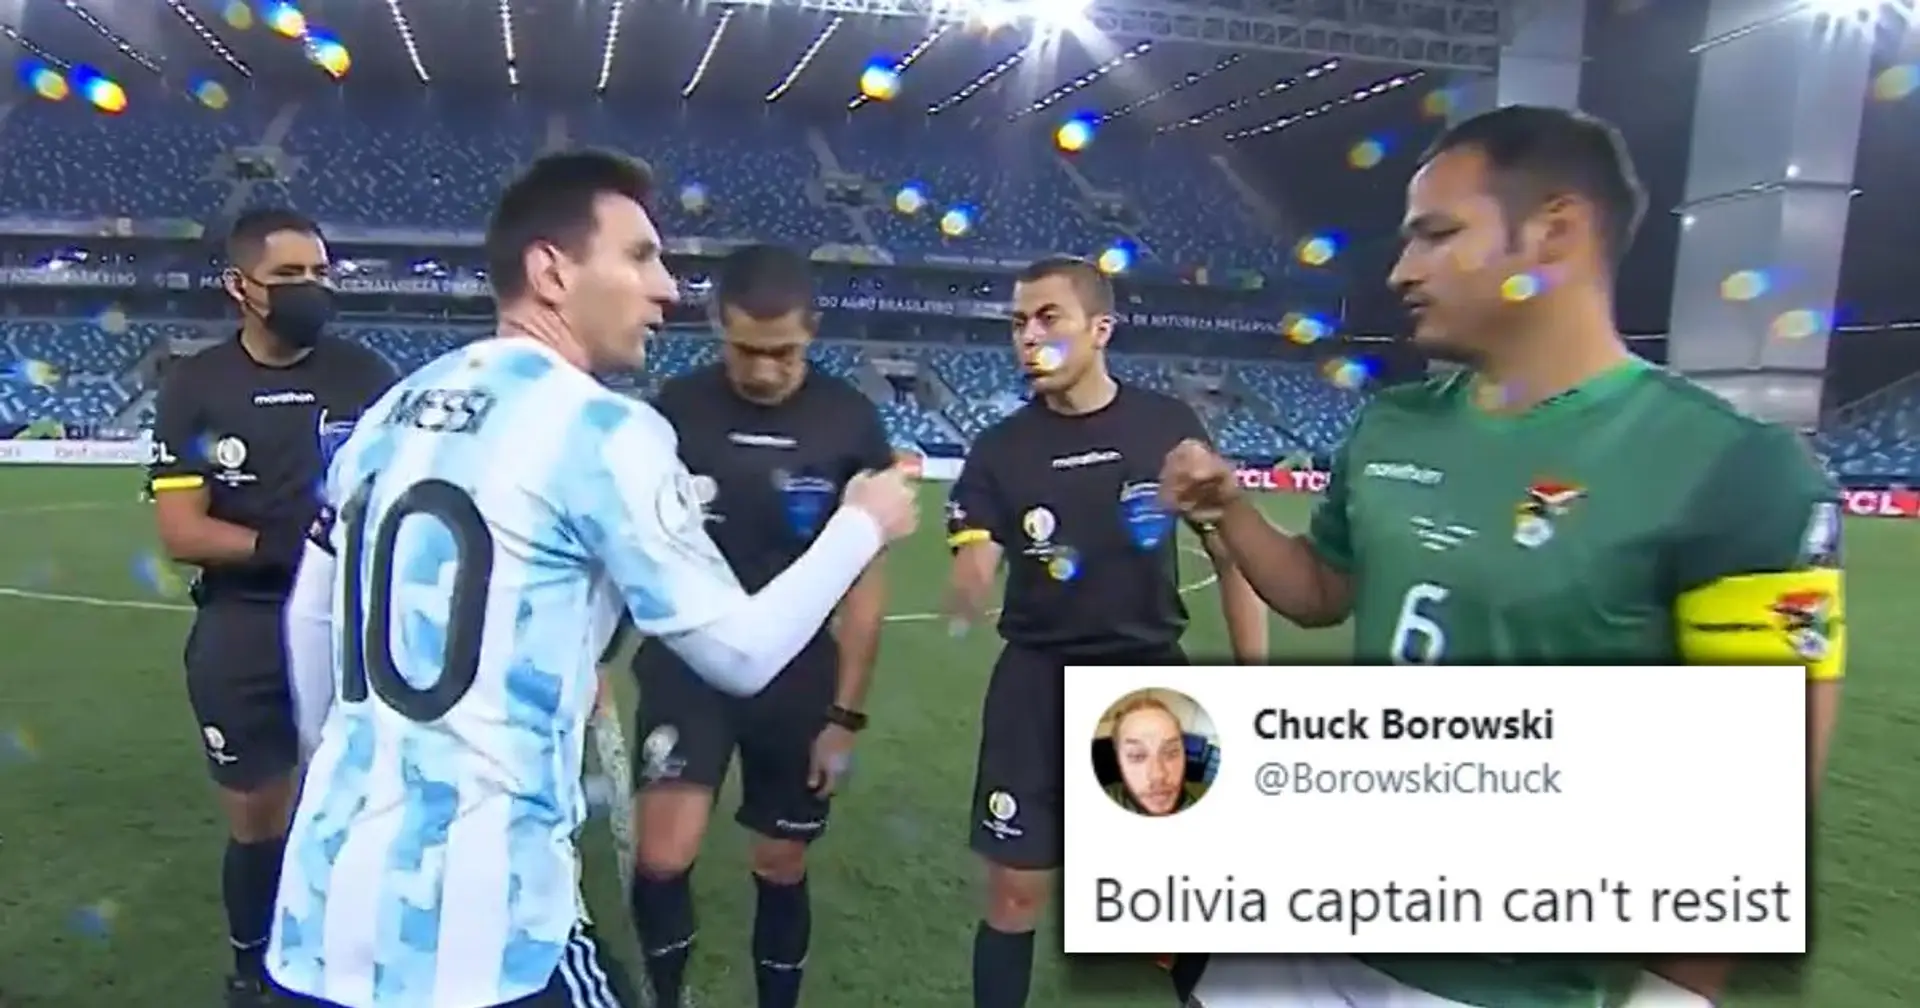 "Il n'a pas pu y résister": un fan repère le petit geste du capitaine bolivien sur Leo Messi